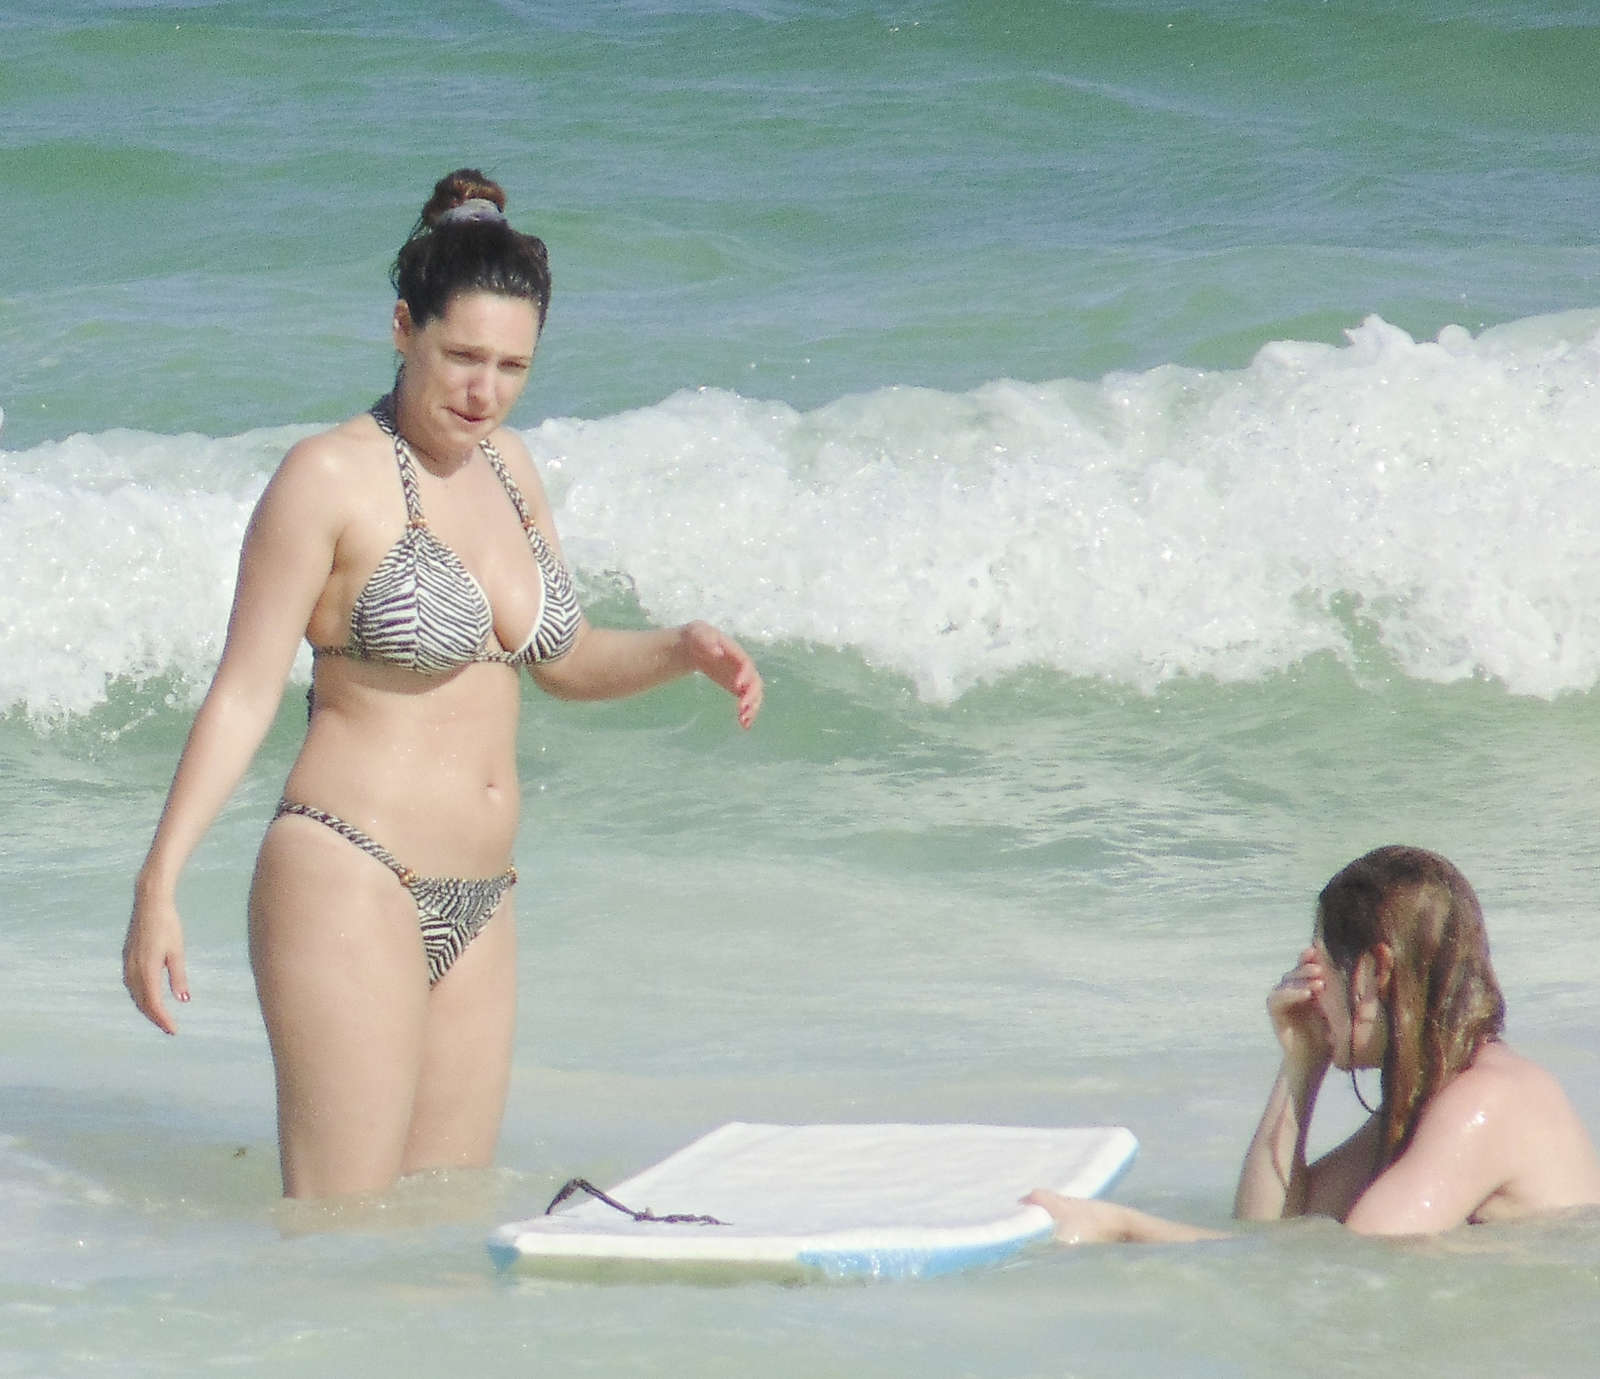 Kelly Brook 2013 : Kelly Brook - Wearing Bikini in Cancun 2013 -59. 